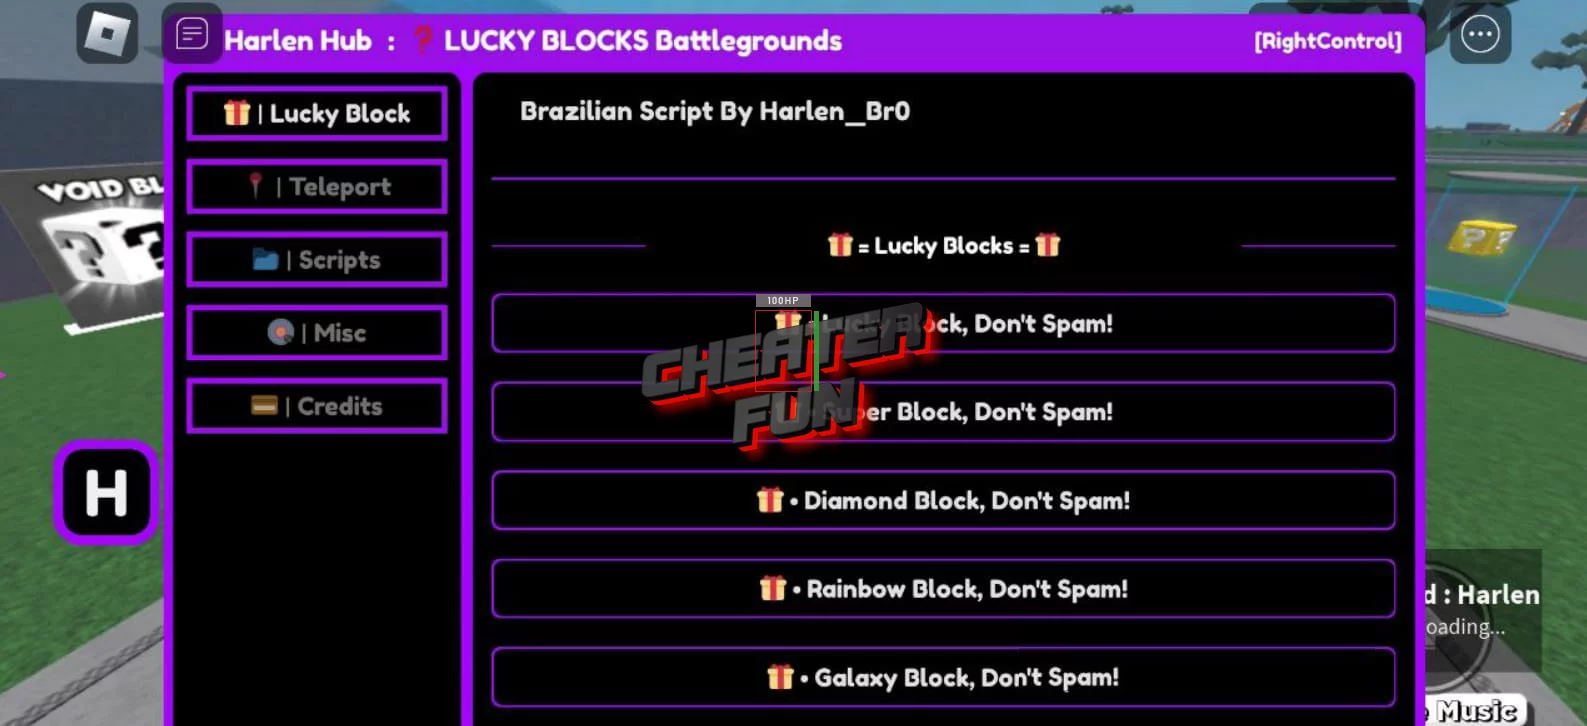 LUCKY BLOCKS Battlegrounds - ScriptRB